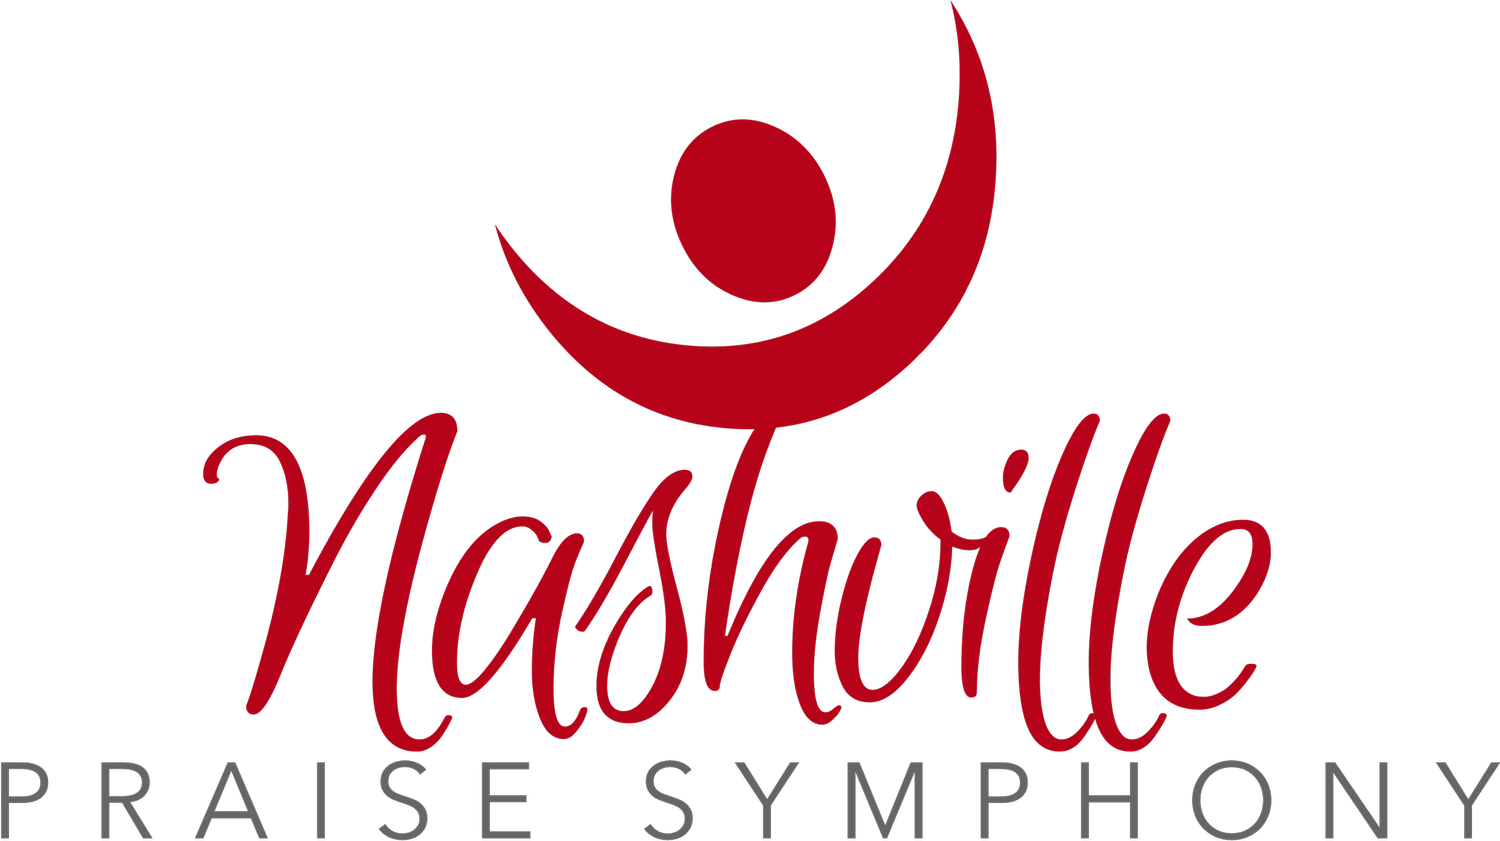 Nashville Praise Symphony